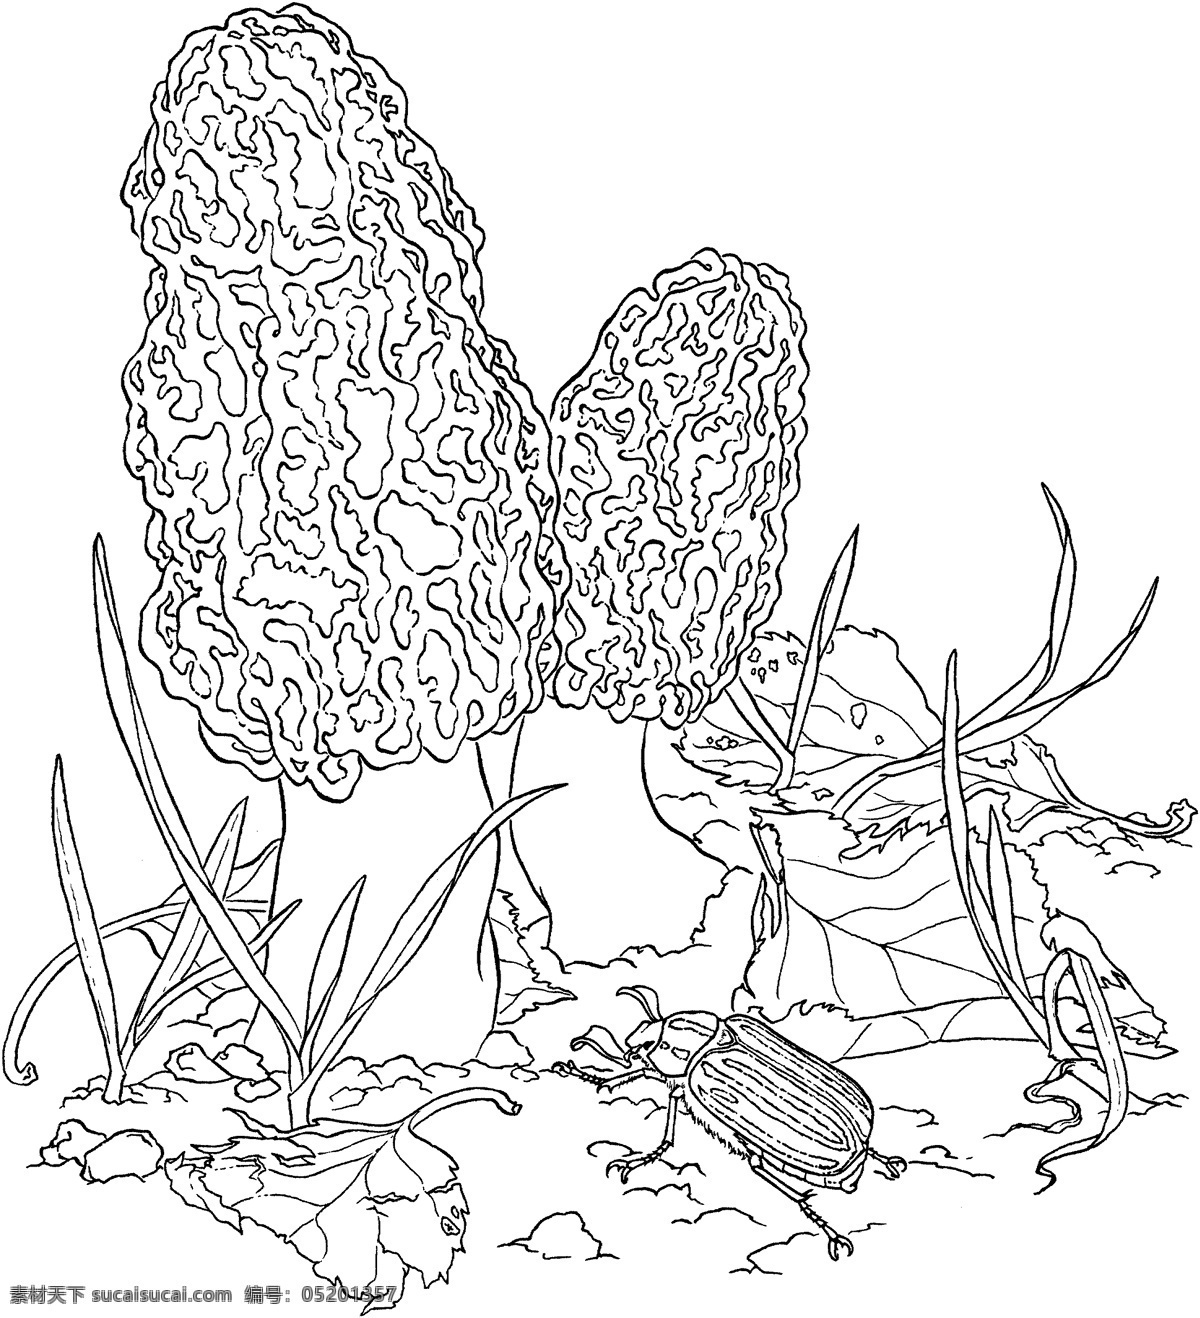 蘑菇 植物 菌类 静物素描 设计素材 静物专辑 素描速写 书画美术 白色